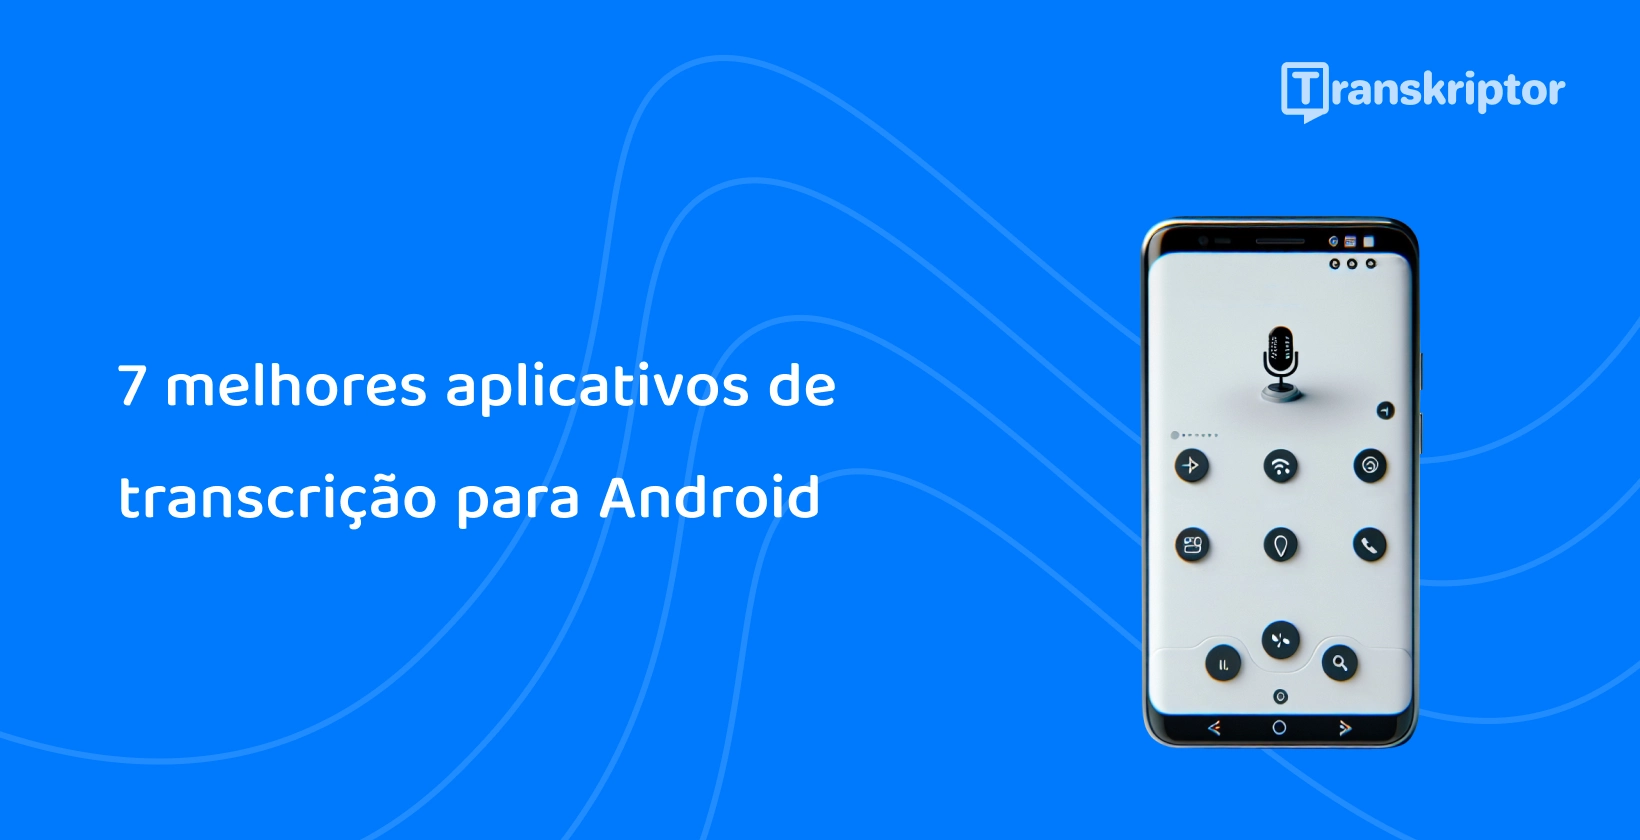 Android telefone exibindo microfone para reconhecimento de voz, simbolizando os principais aplicativos de transcrição para Android.